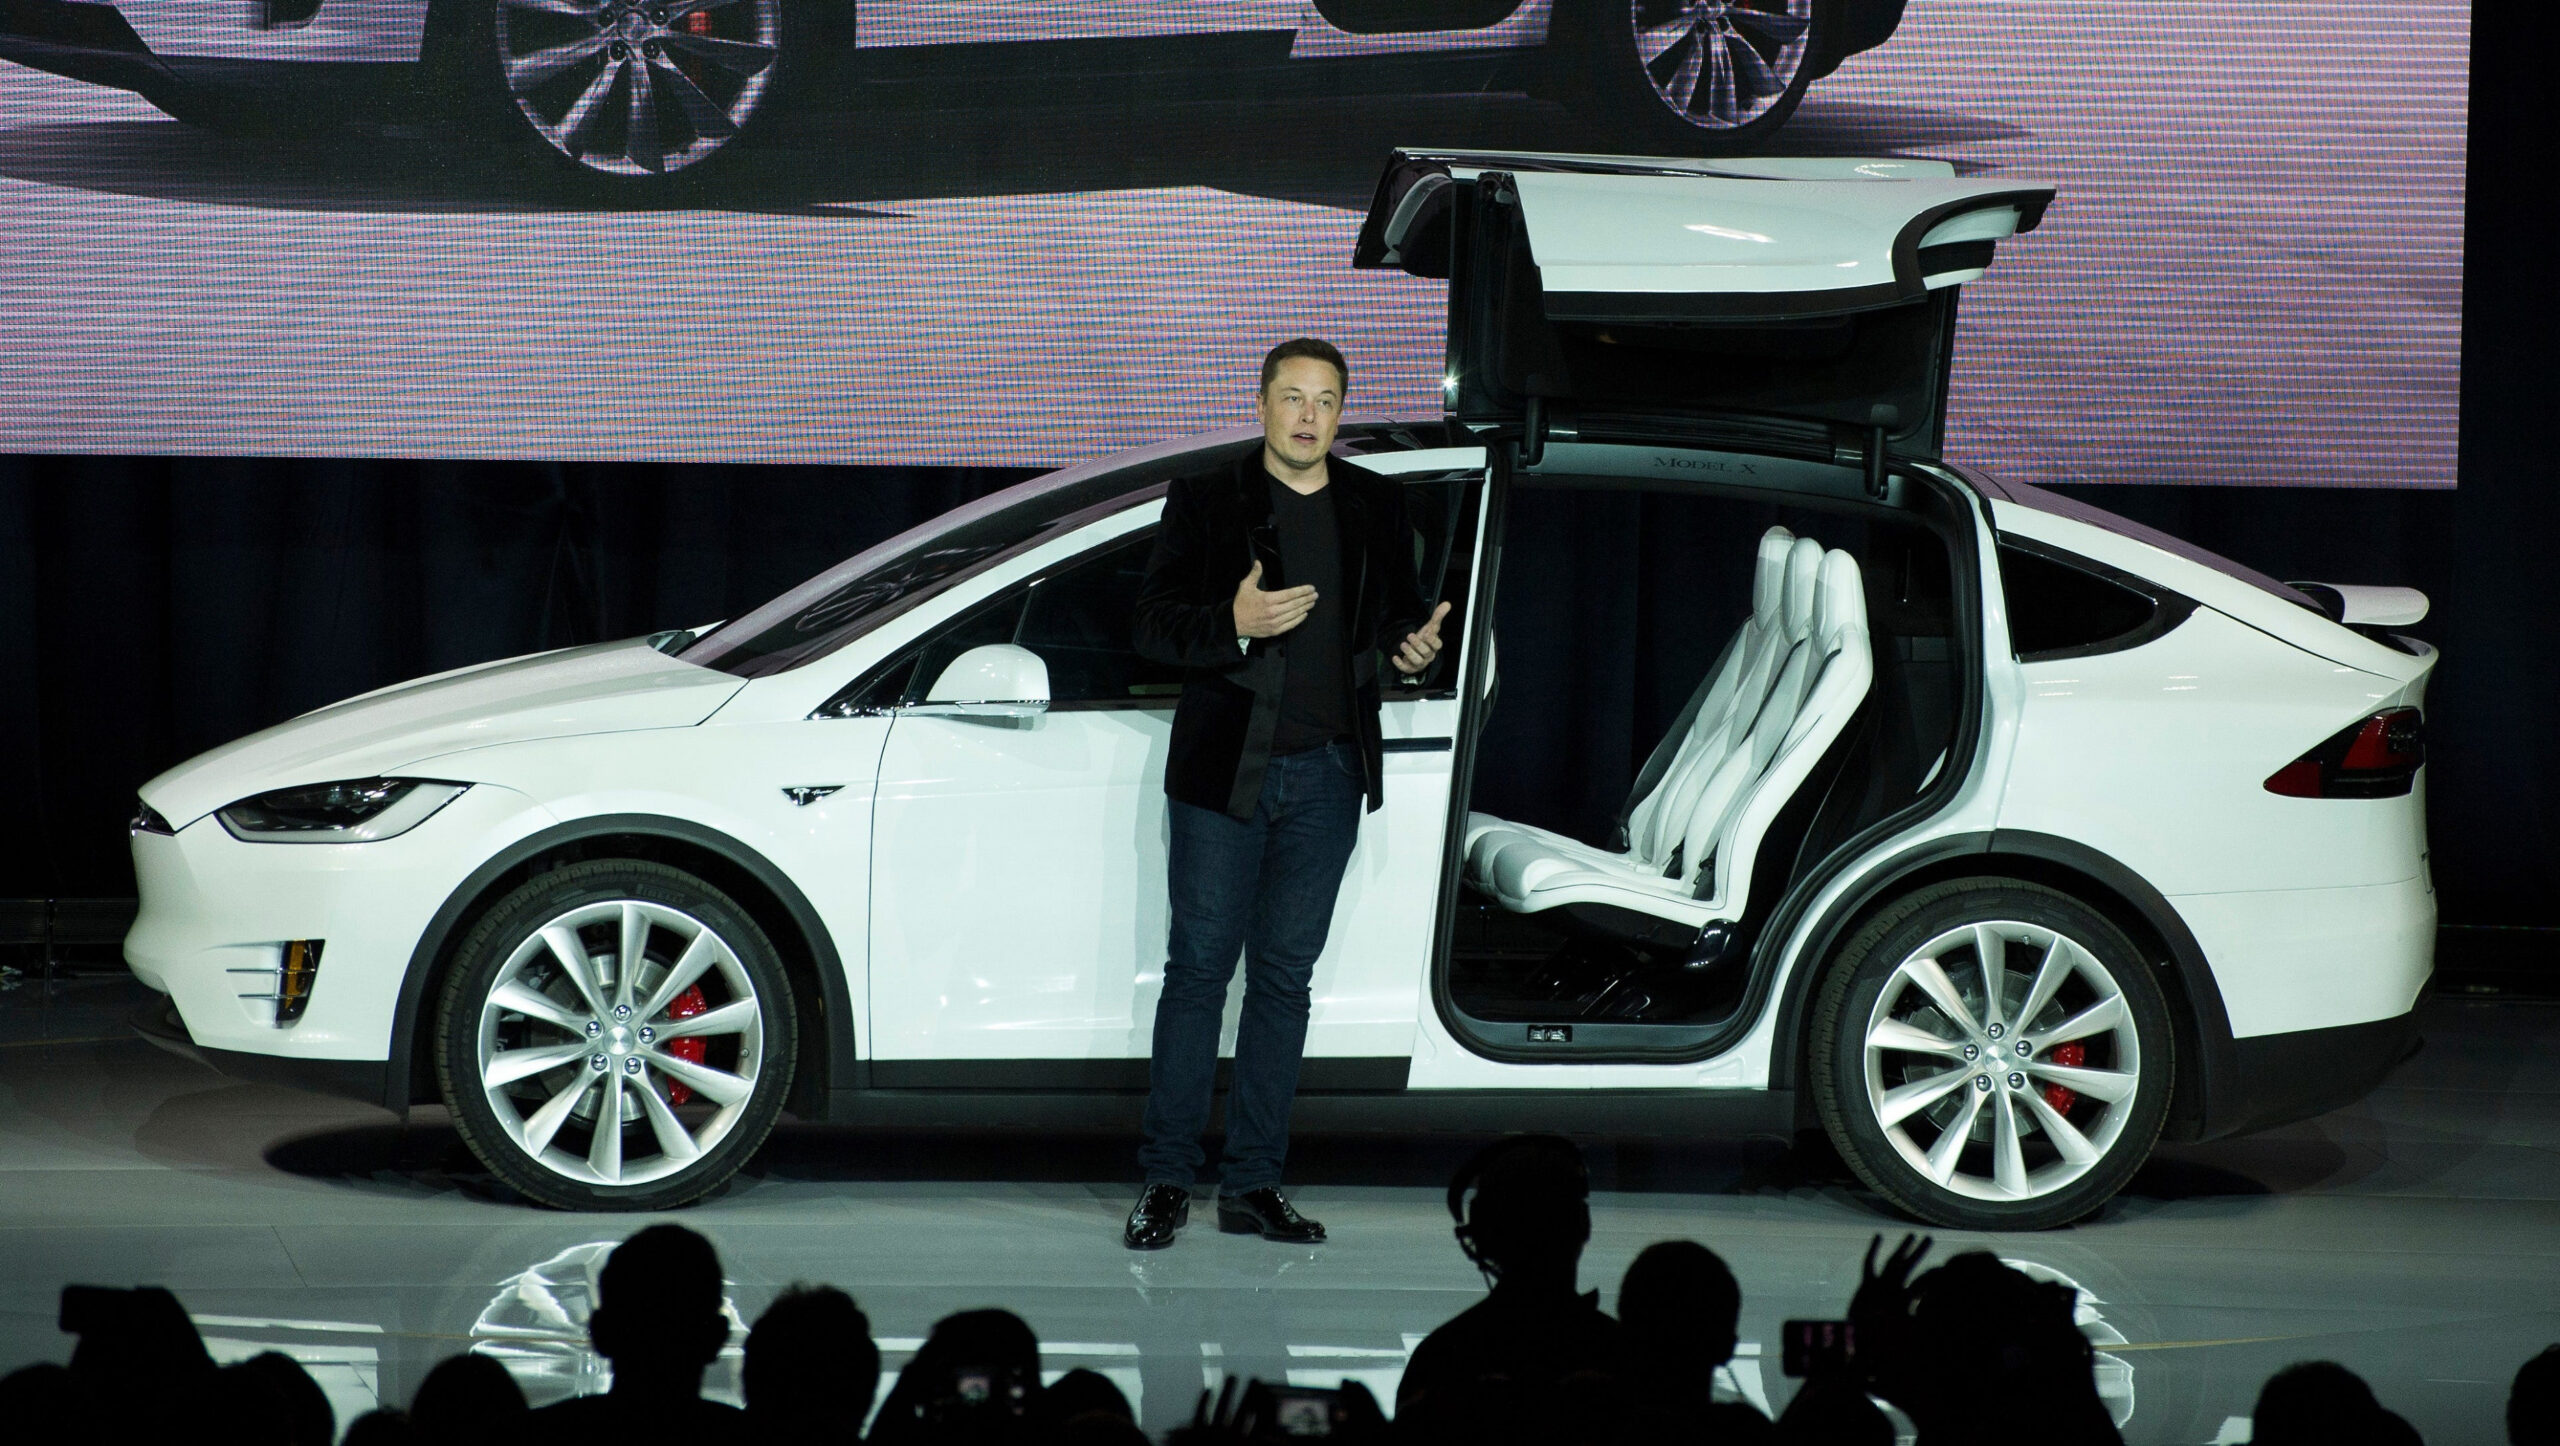 Tesla prices novel Model X SUV at $3 - tesla model x price california